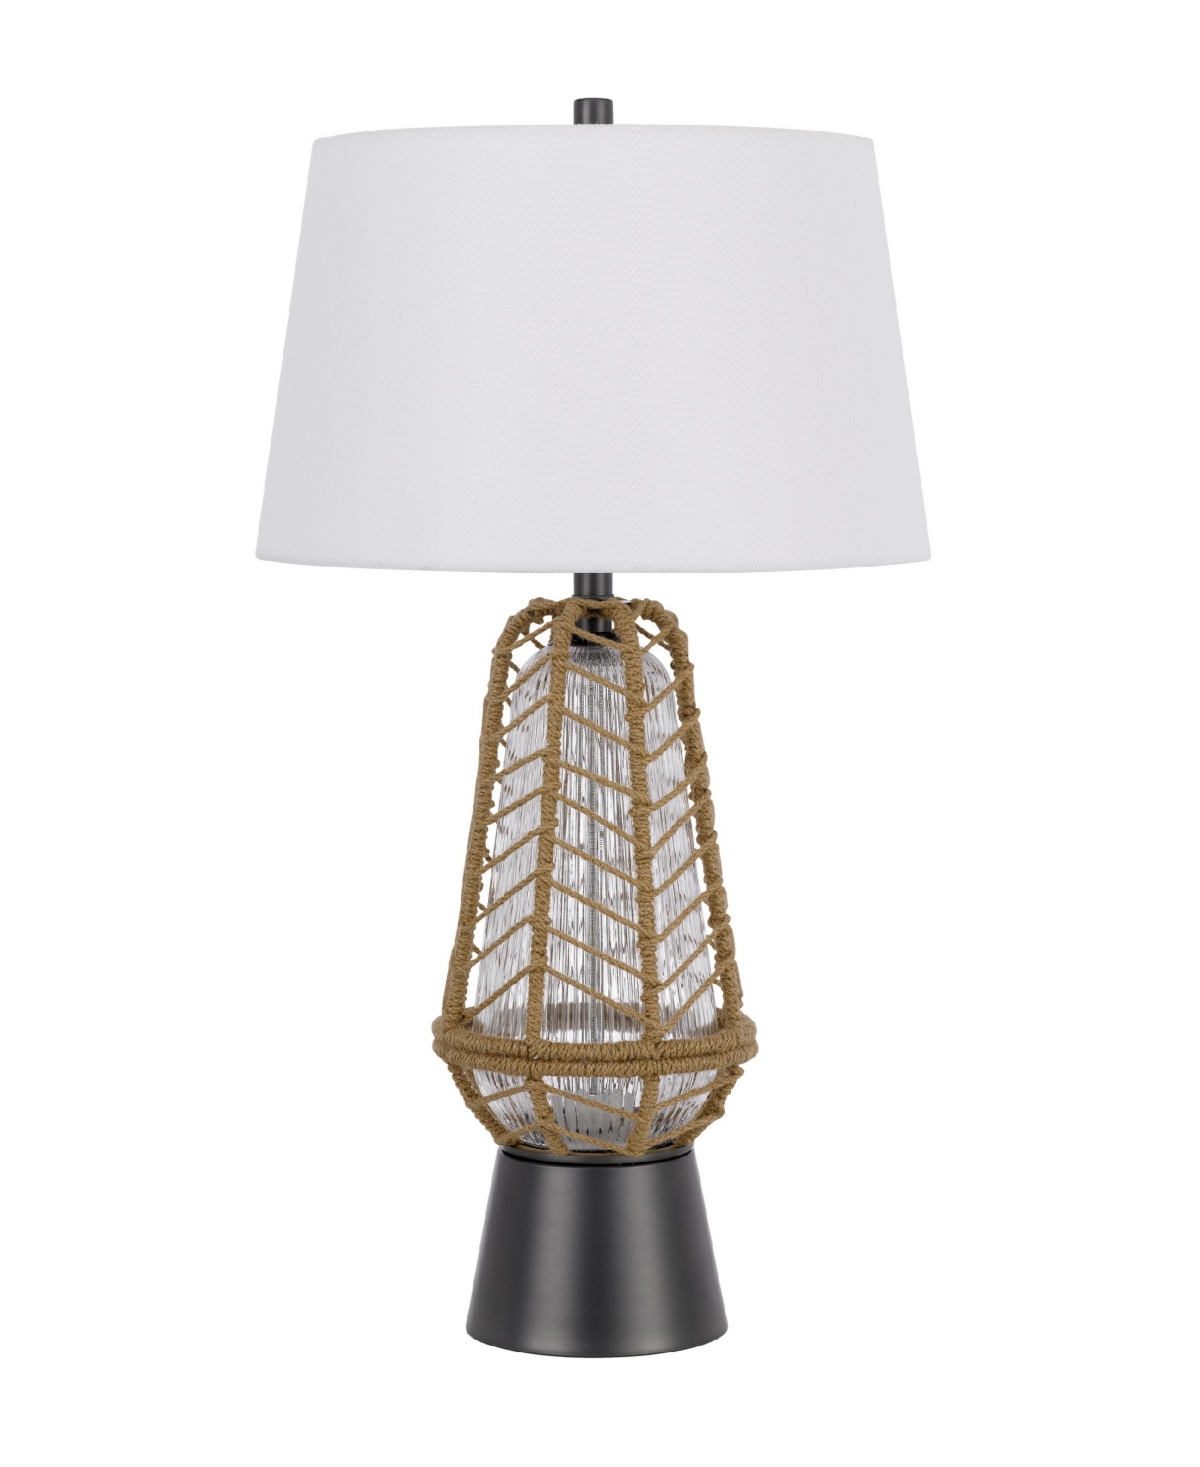 Cal Lighting Hanko 31" Height Metal Table Lamp In Burlap,charcoal Gray